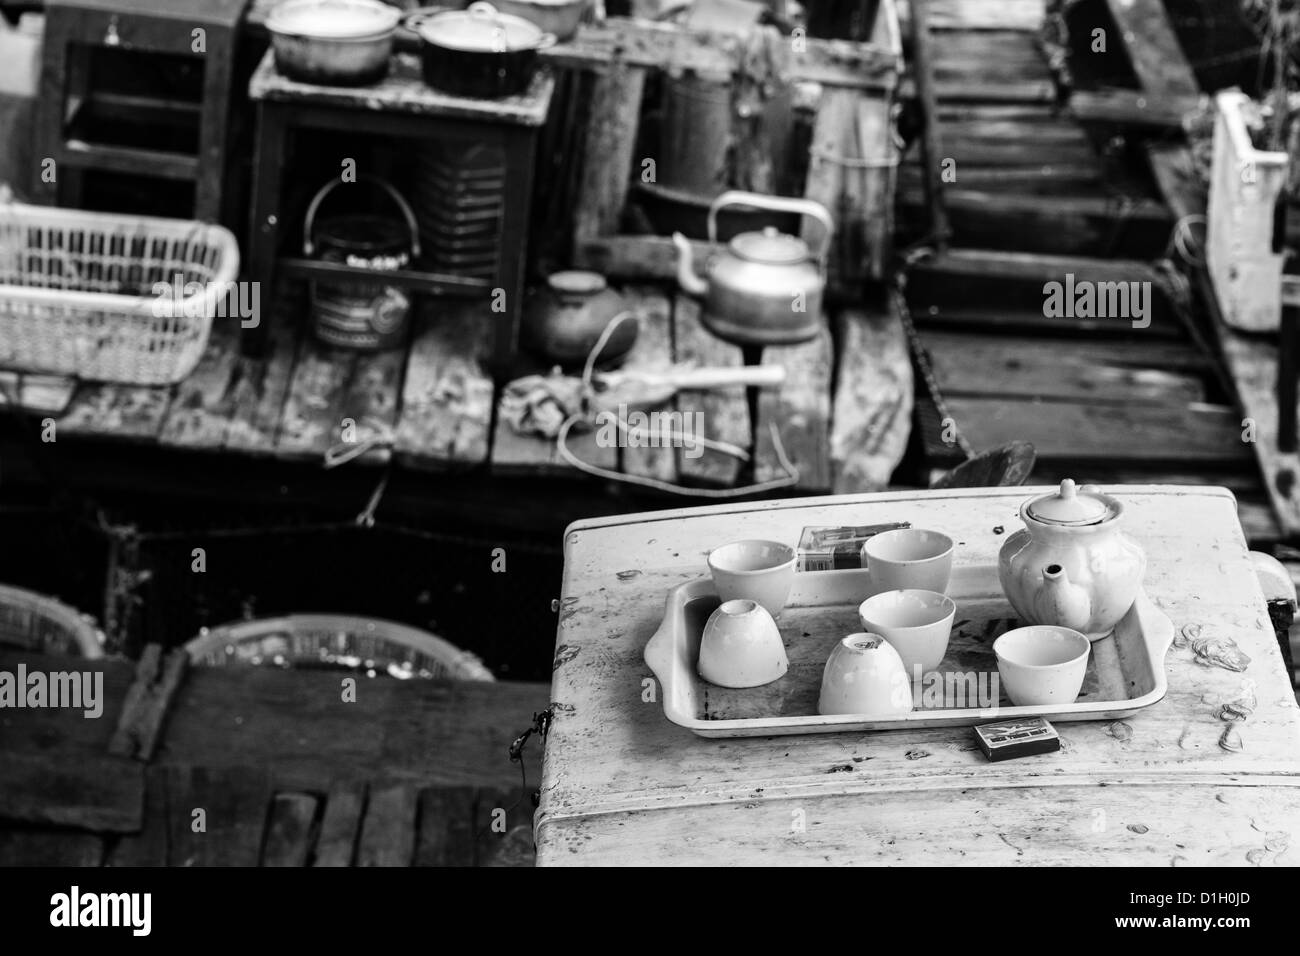 Schwarz / weiß Bild von Teekanne, Teetassen & Spiele auf einem Tablett. Stockfoto